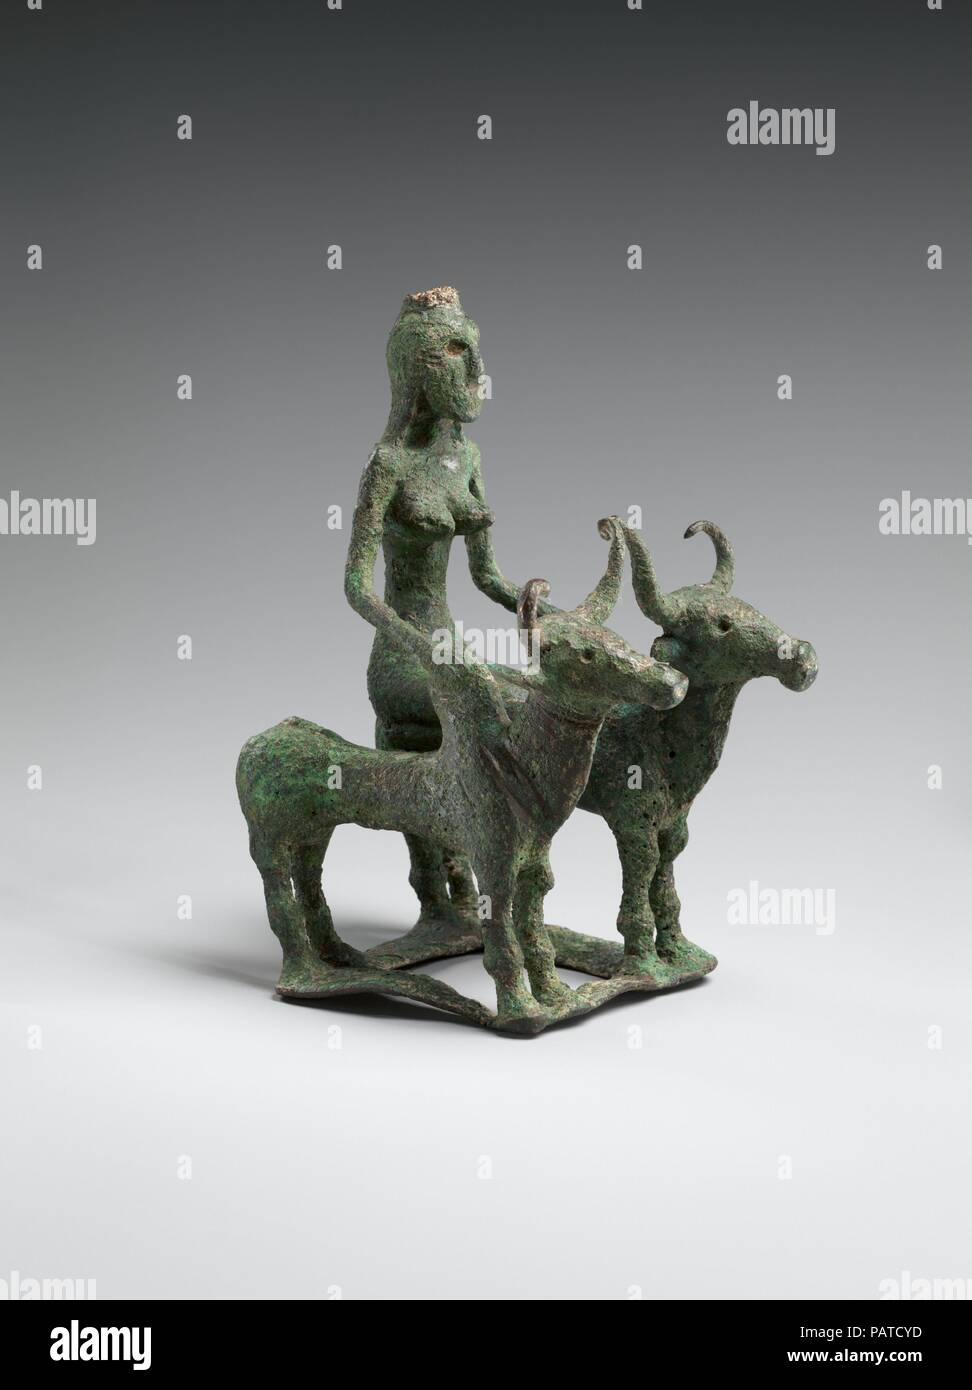 Frau Reiten zwei Brahman Bullen. Kultur: Indien (kausambi). Abmessungen: H. 5 1/2 in. (14 cm); W. 3 1/2 in. (8,9 cm); D.4 1/2 in. (11,4 cm). Datum: 2000-1750 v. Chr.. Diese bemerkenswerte Objekt ist die älteste bronze Objekt in der indischen Sammlungen des Museums und ist eine seltene Überlebende der frühen Bronze Kultur, die mit der späten Harappan Zivilisation in Nord Indien und das Industal (Pakistan) im zweiten Jahrtausend v. Chr. zwei gemeinsame verbundenen Humped ('Brahman') Stiere unterstützen eine Plattform, auf der eine Frau kniet. Ihre Hände ruhen auf Höckern, die Bullen". Das Ensemble ist auf einem rechteckigen Plattform, Stockfoto